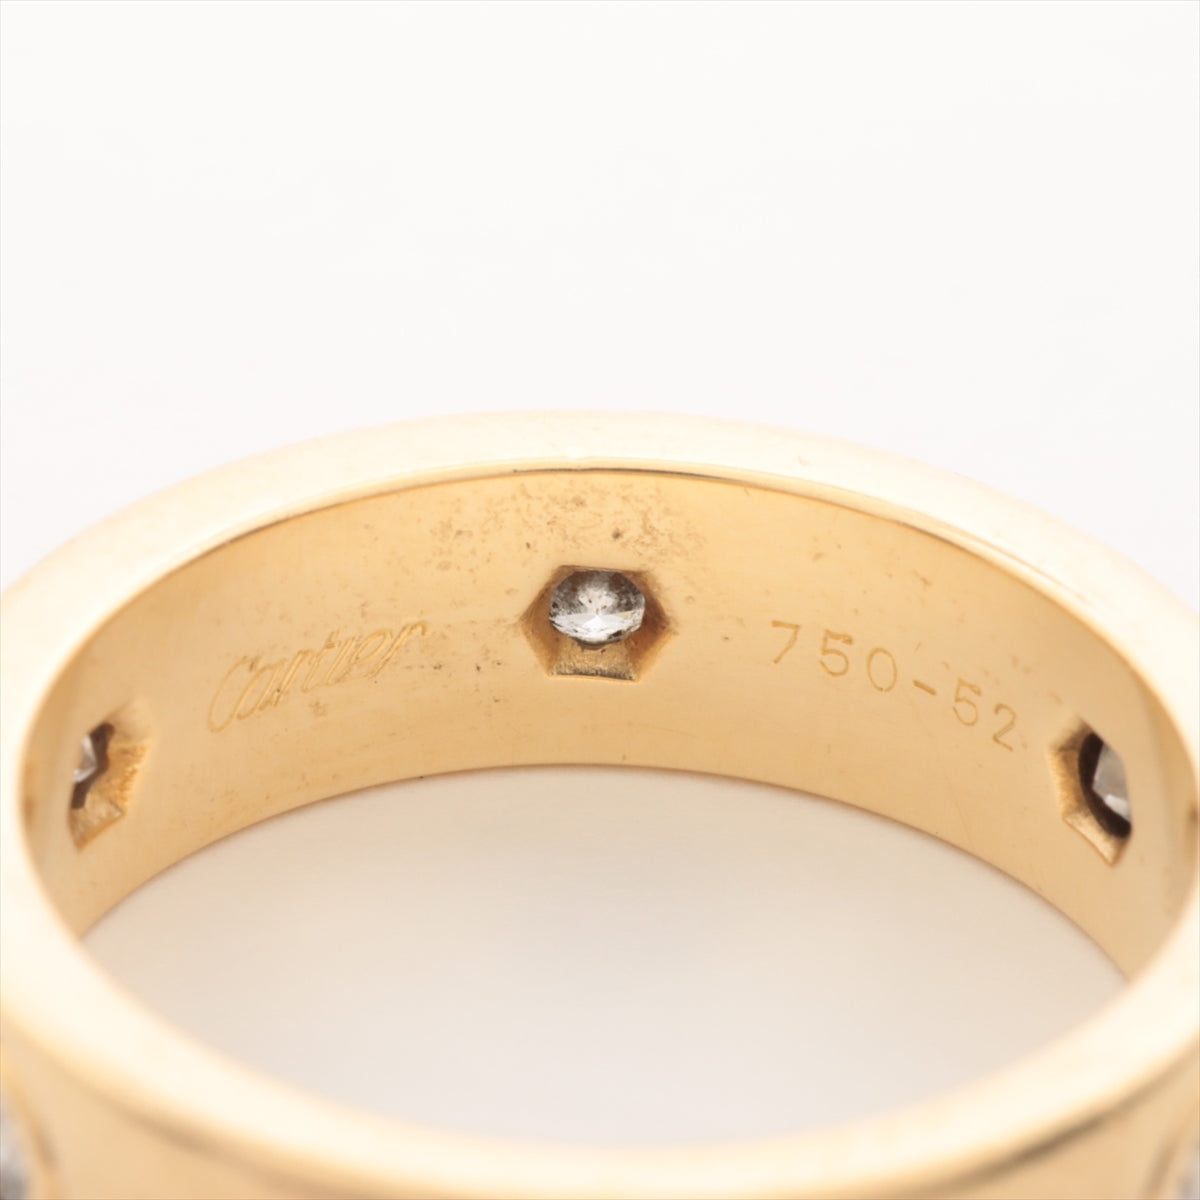 Cartier Love full Diamond Ring 750(YG) 8.1g 52